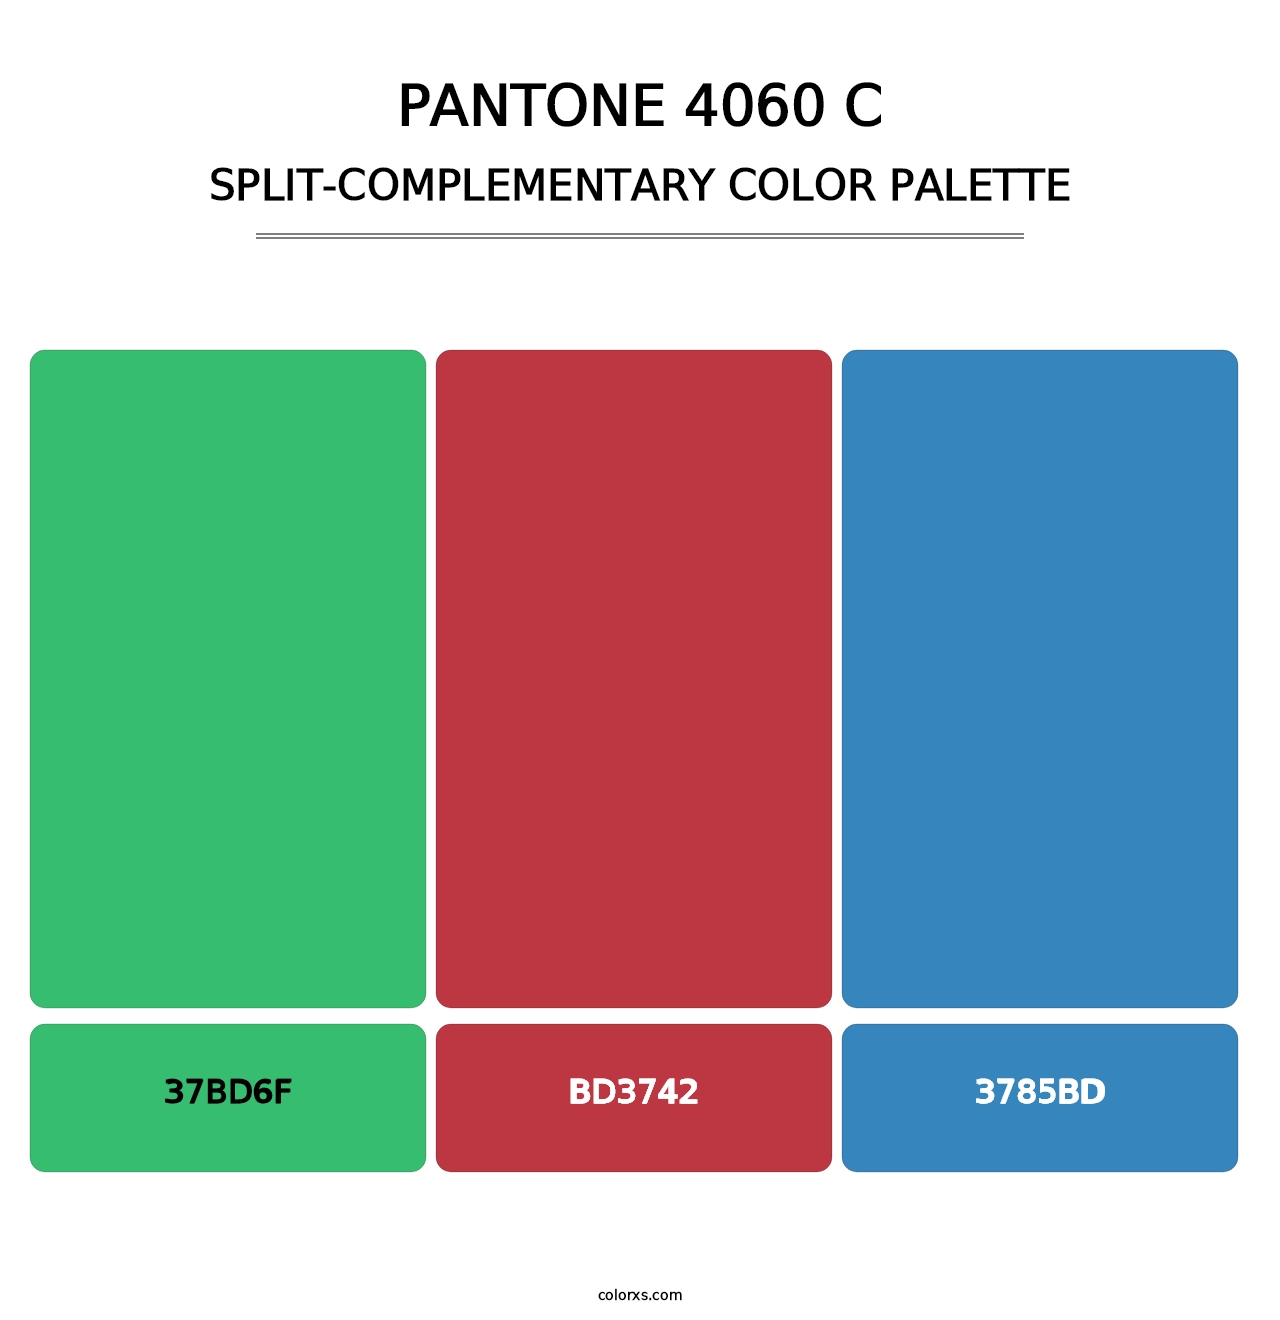 PANTONE 4060 C - Split-Complementary Color Palette